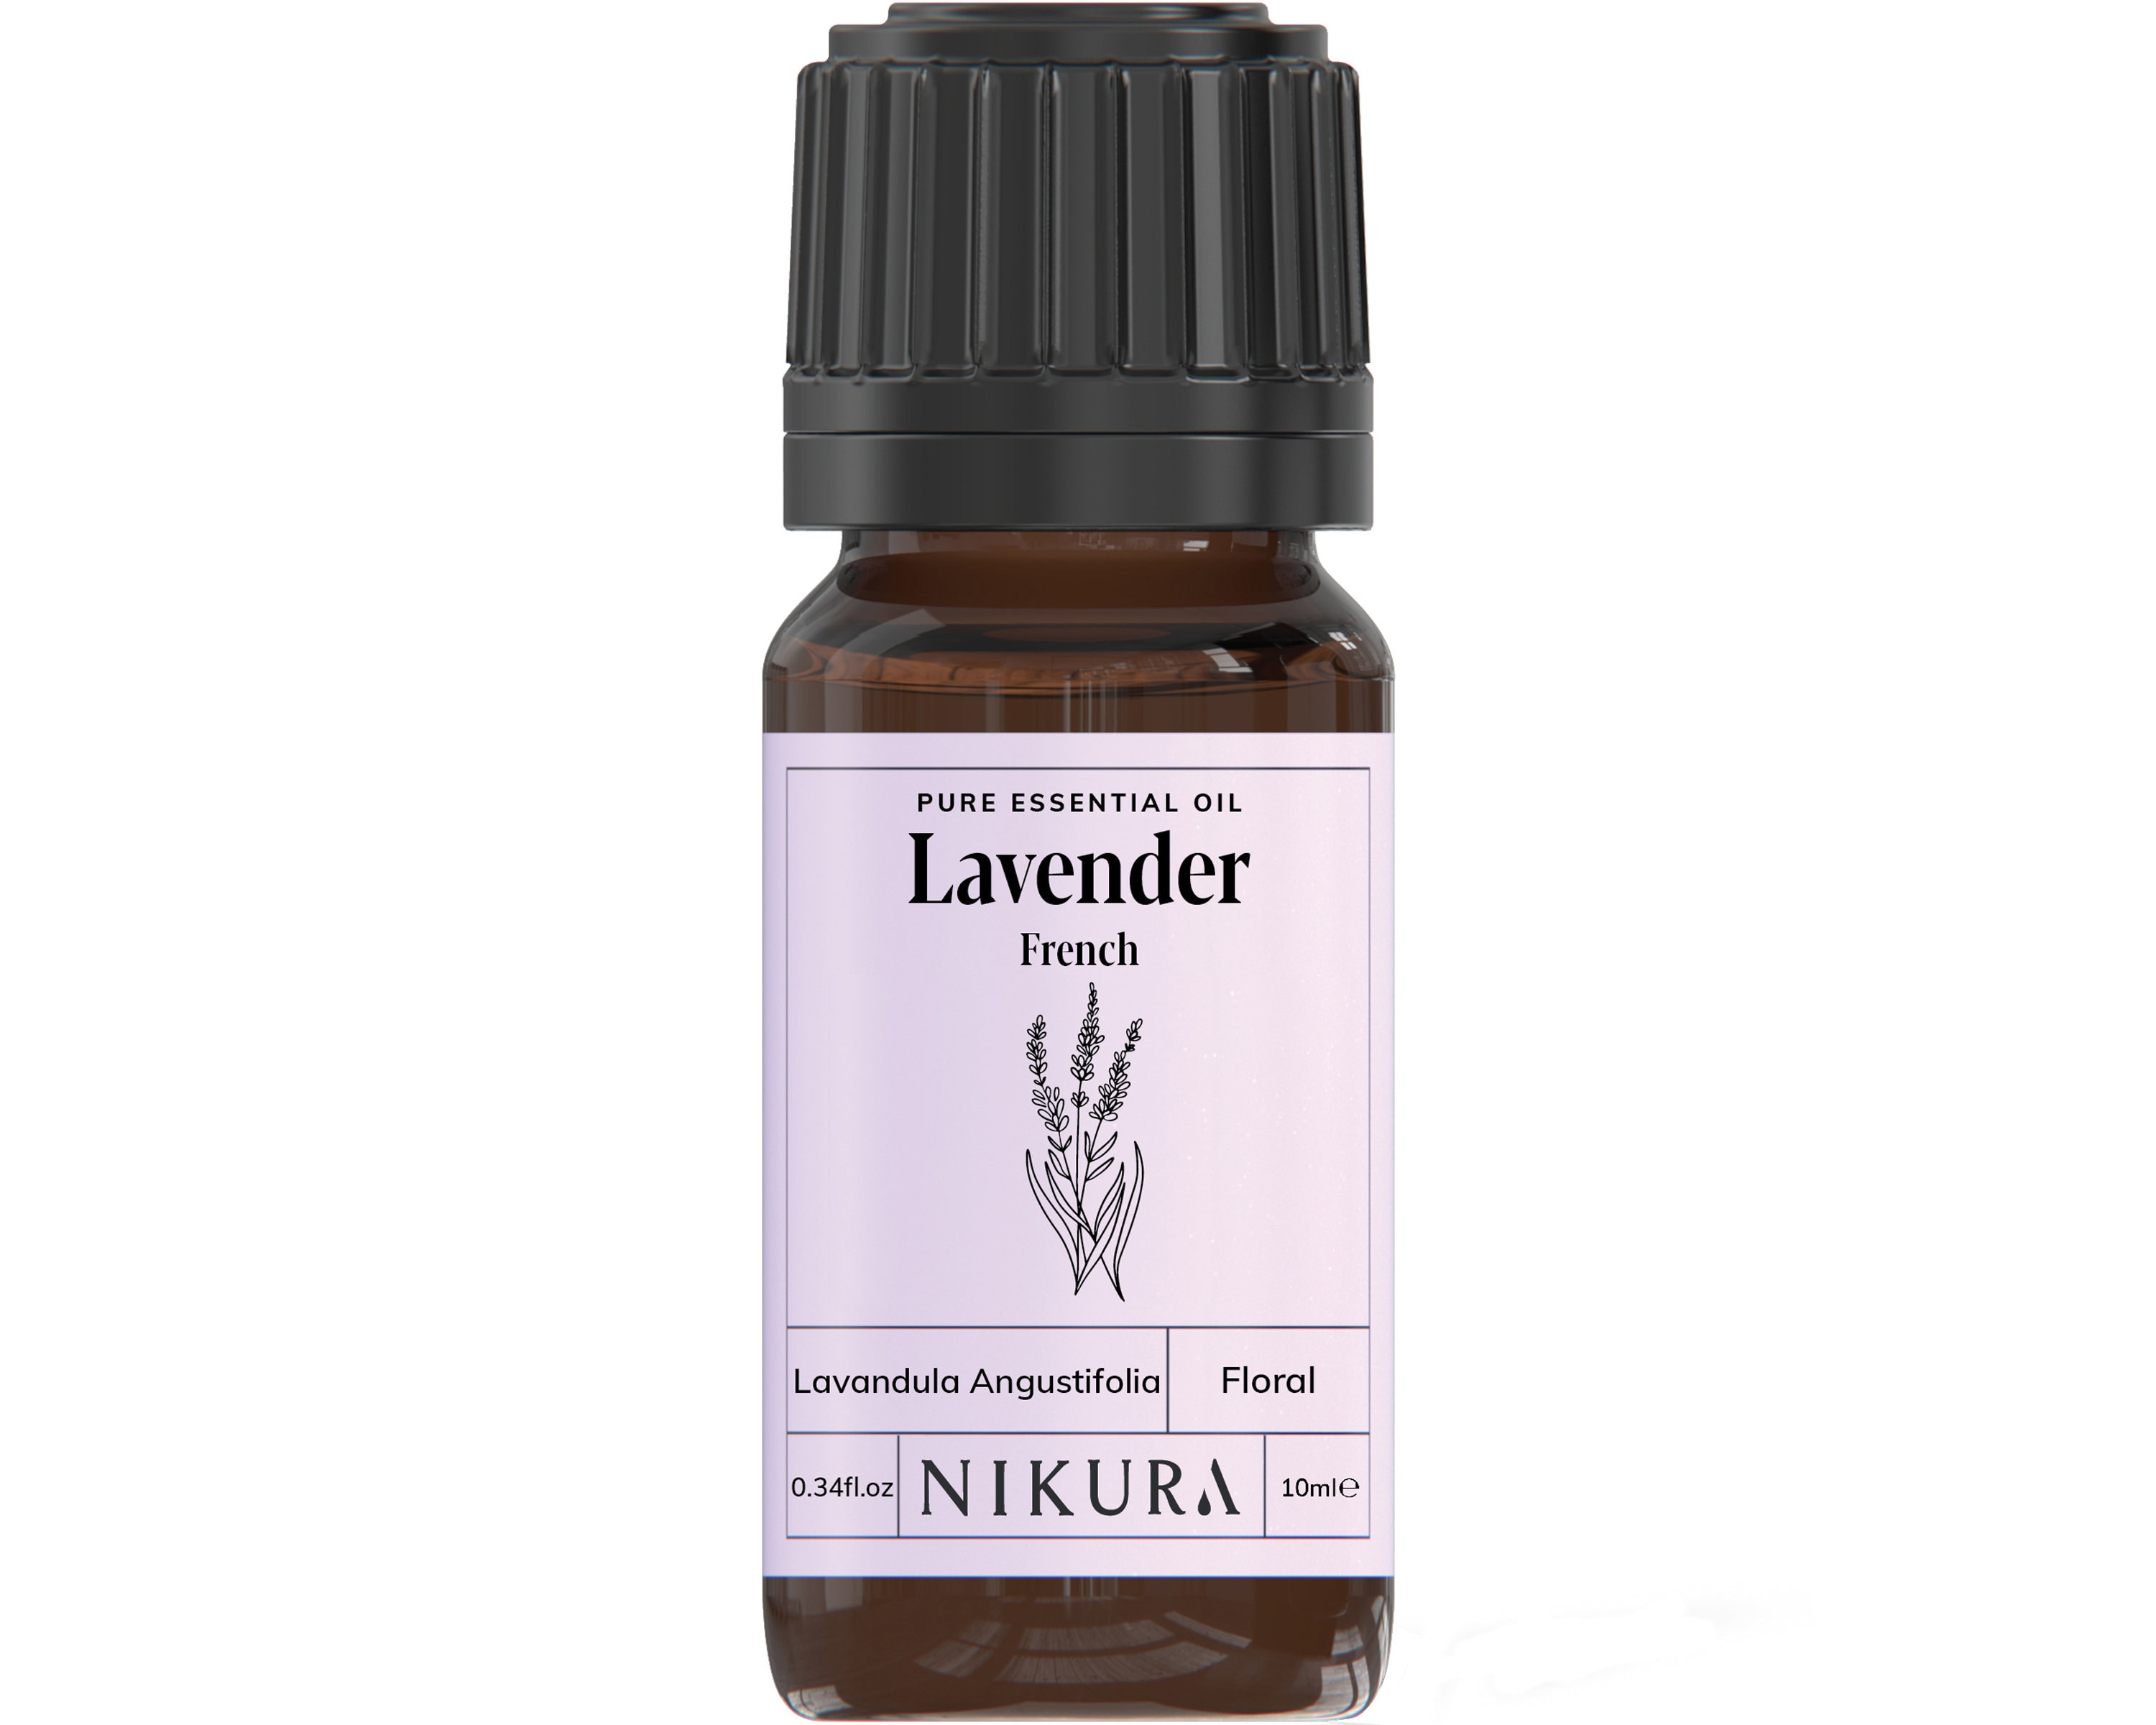 HIQILI 1 Fl Oz Lavender Essential Oil Pure, 100% Pure Natural for Diffuser,  Skin - 30ml